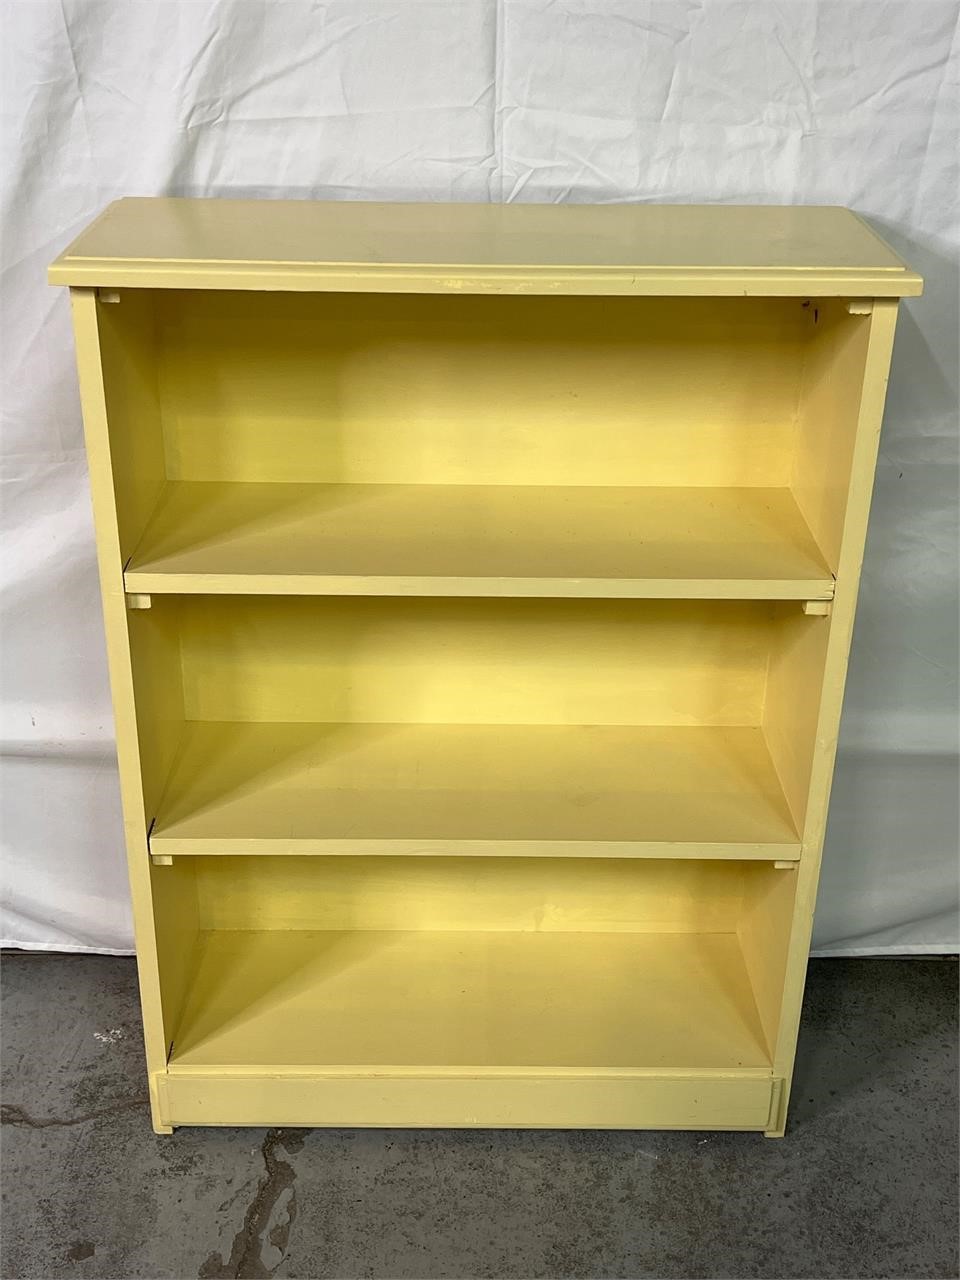 Yellow Wooden Bookshelf